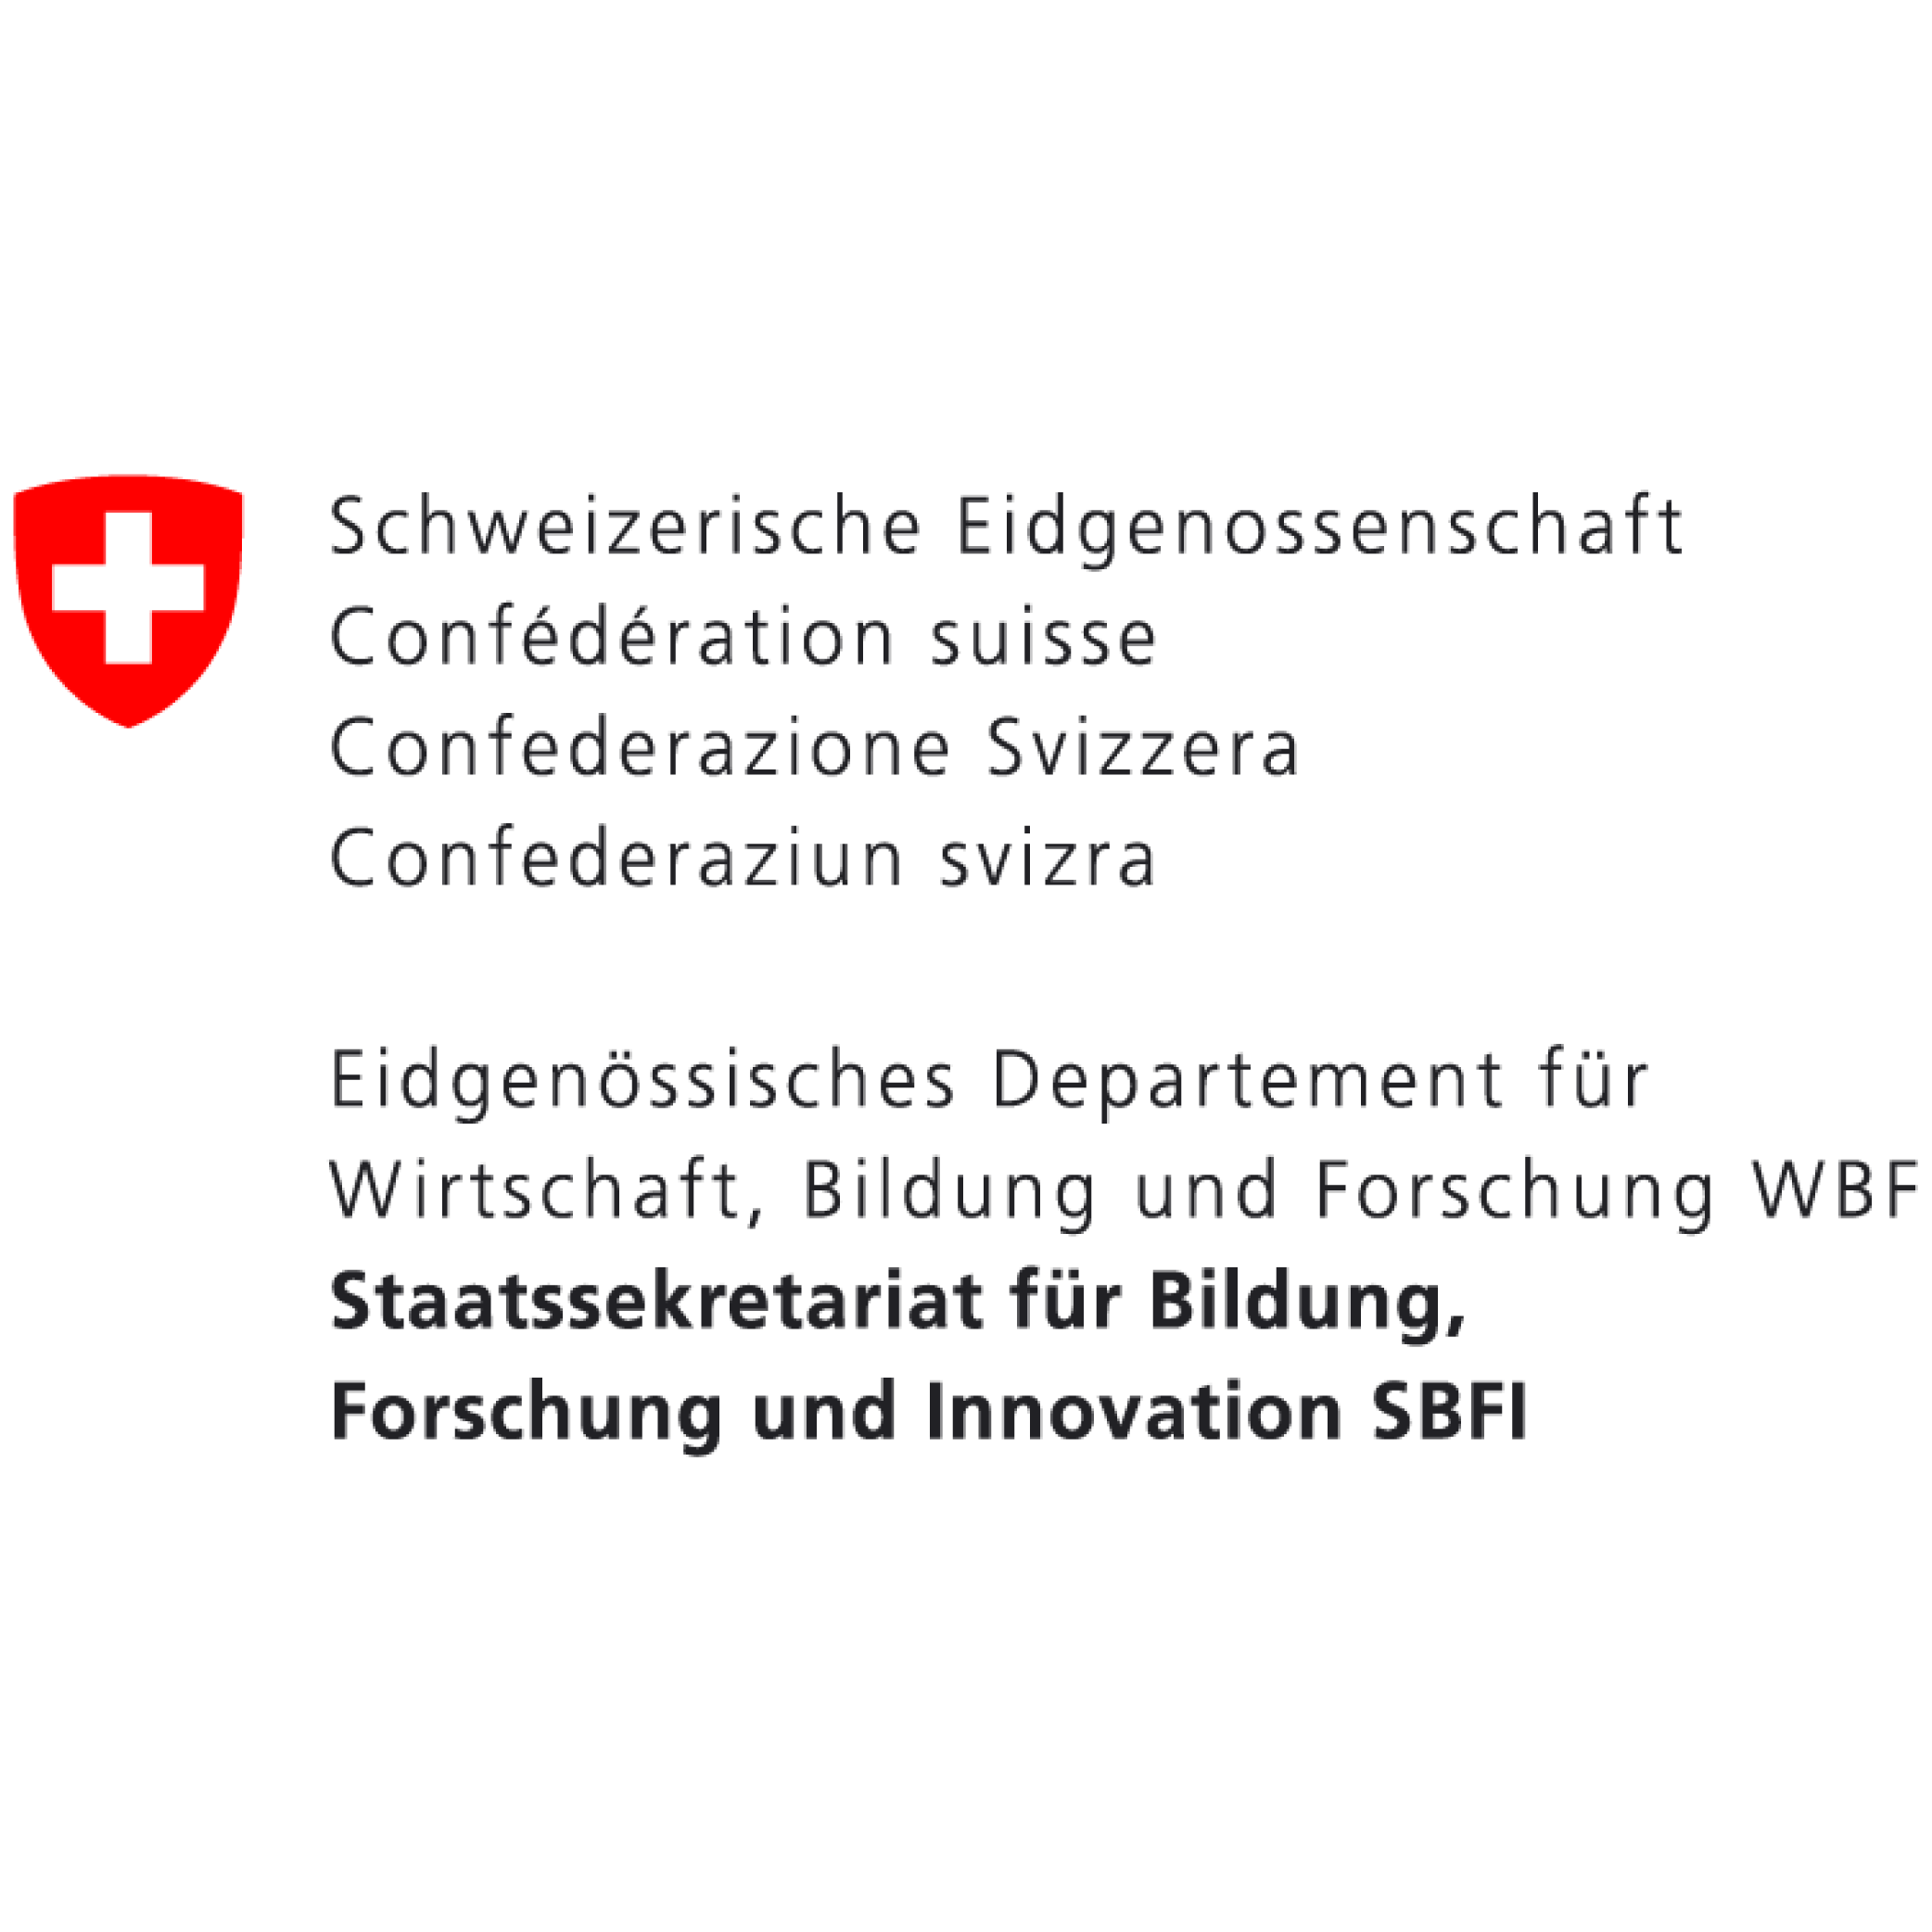 WBF-SBFI-logo-de